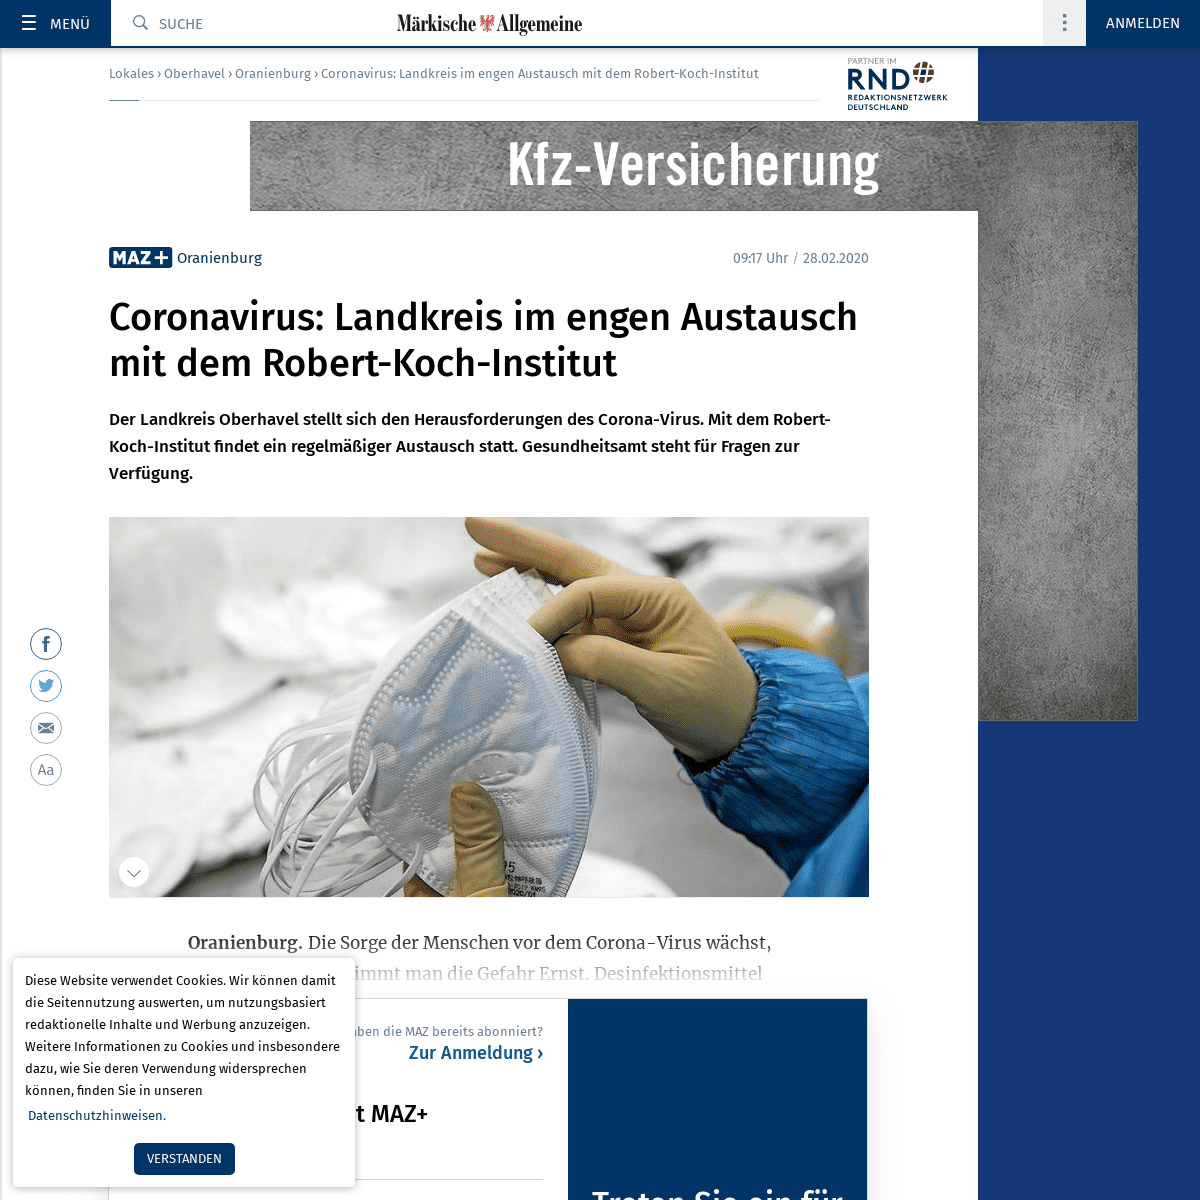 A complete backup of www.maz-online.de/Lokales/Oberhavel/Oranienburg/Coronavirus-Landkreis-im-engen-Austausch-mit-dem-Robert-Koc